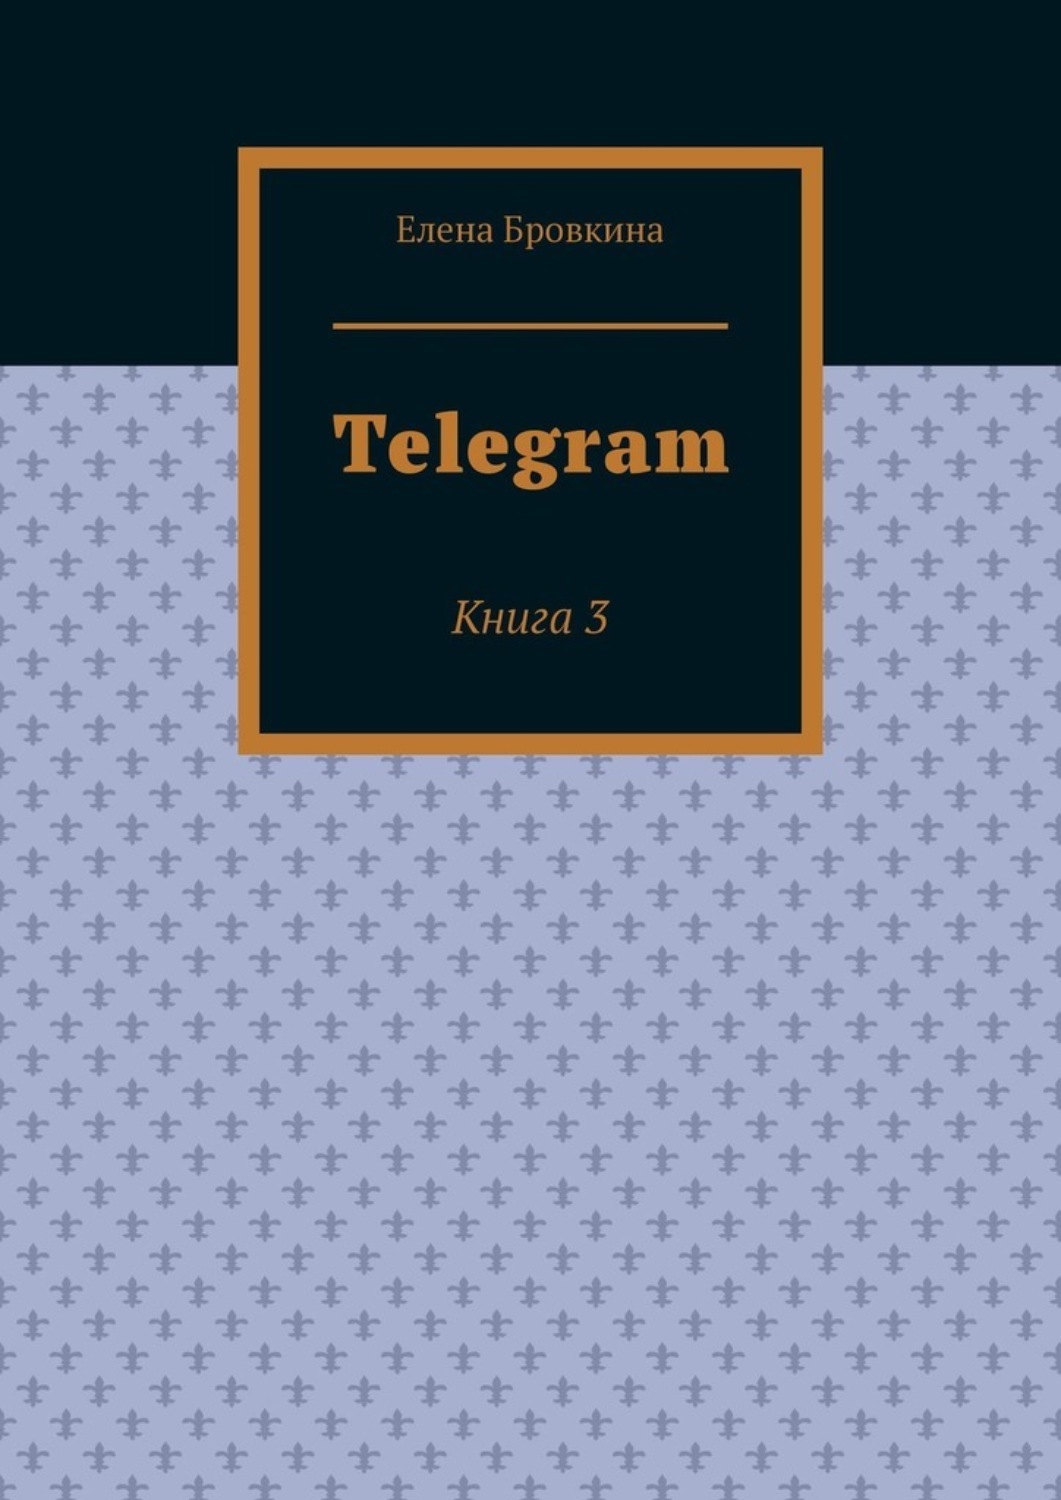 Книги в телеграмме на русском языке фото 109